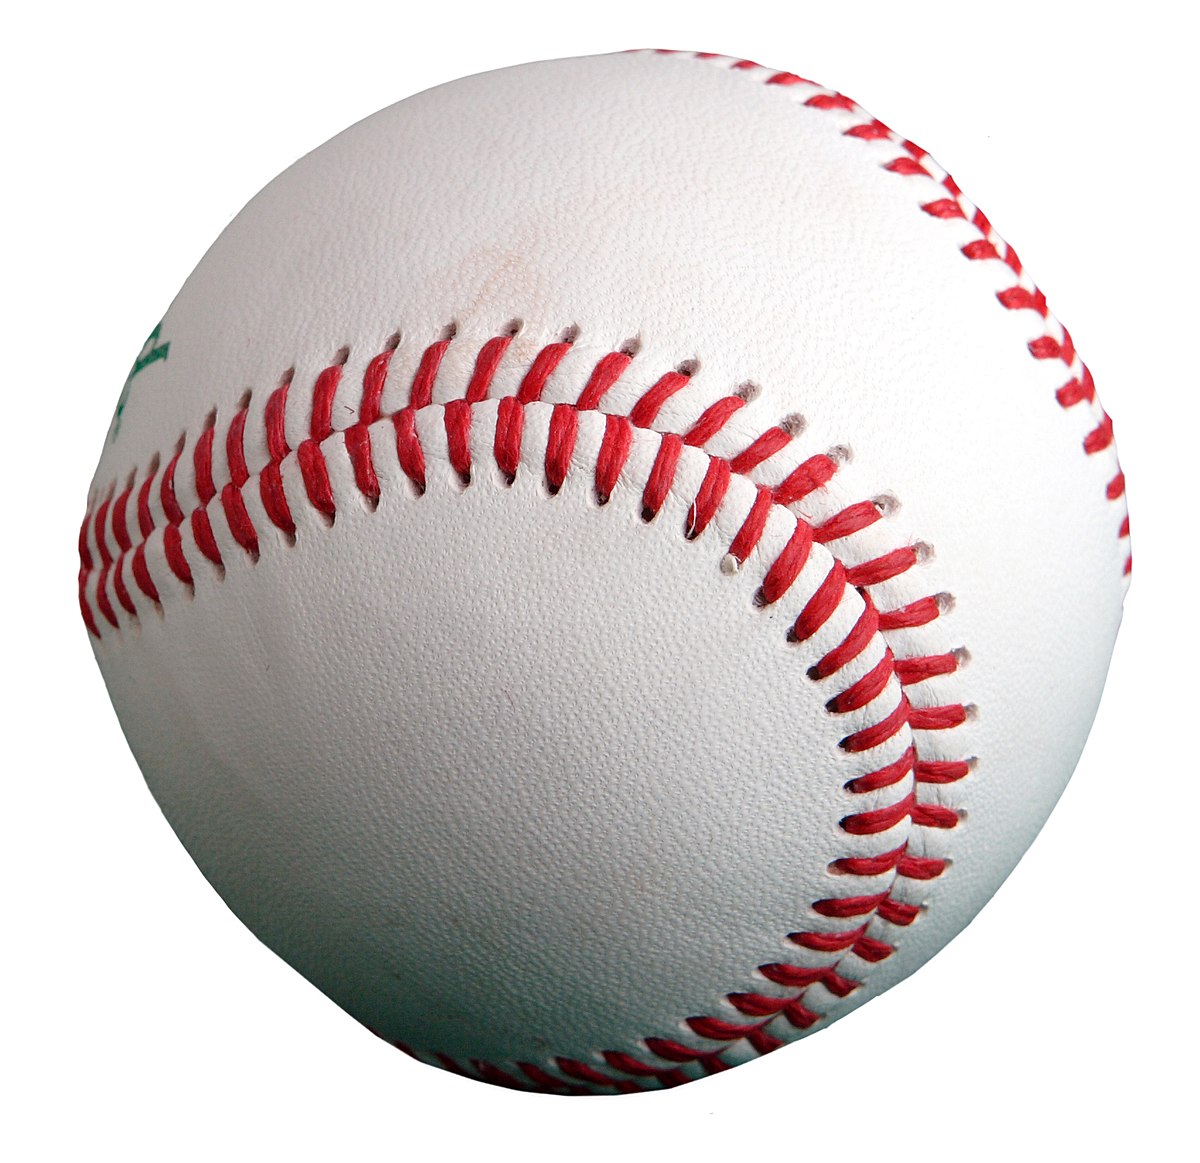 https://upload.wikimedia.org/wikipedia/commons/thumb/1/1e/Baseball_%28crop%29.jpg/1200px-Baseball_%28crop%29.jpg